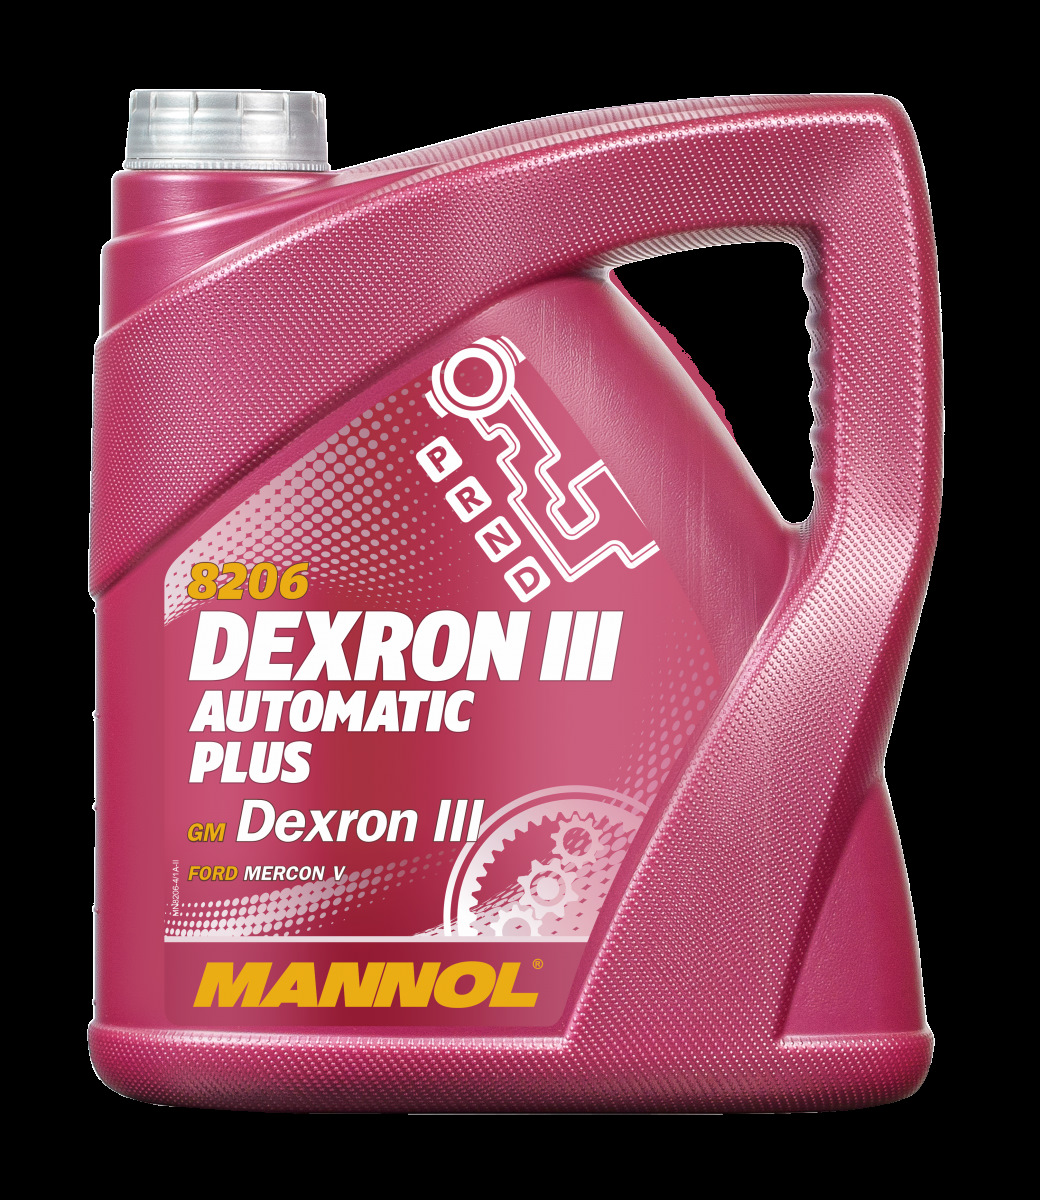 Atf dexron 4. Mannol Dexron III. АТФ 3 Mannol 4л. Mannol Dexron III Automatic Plus. Mannol ATF Dexron III (4л).